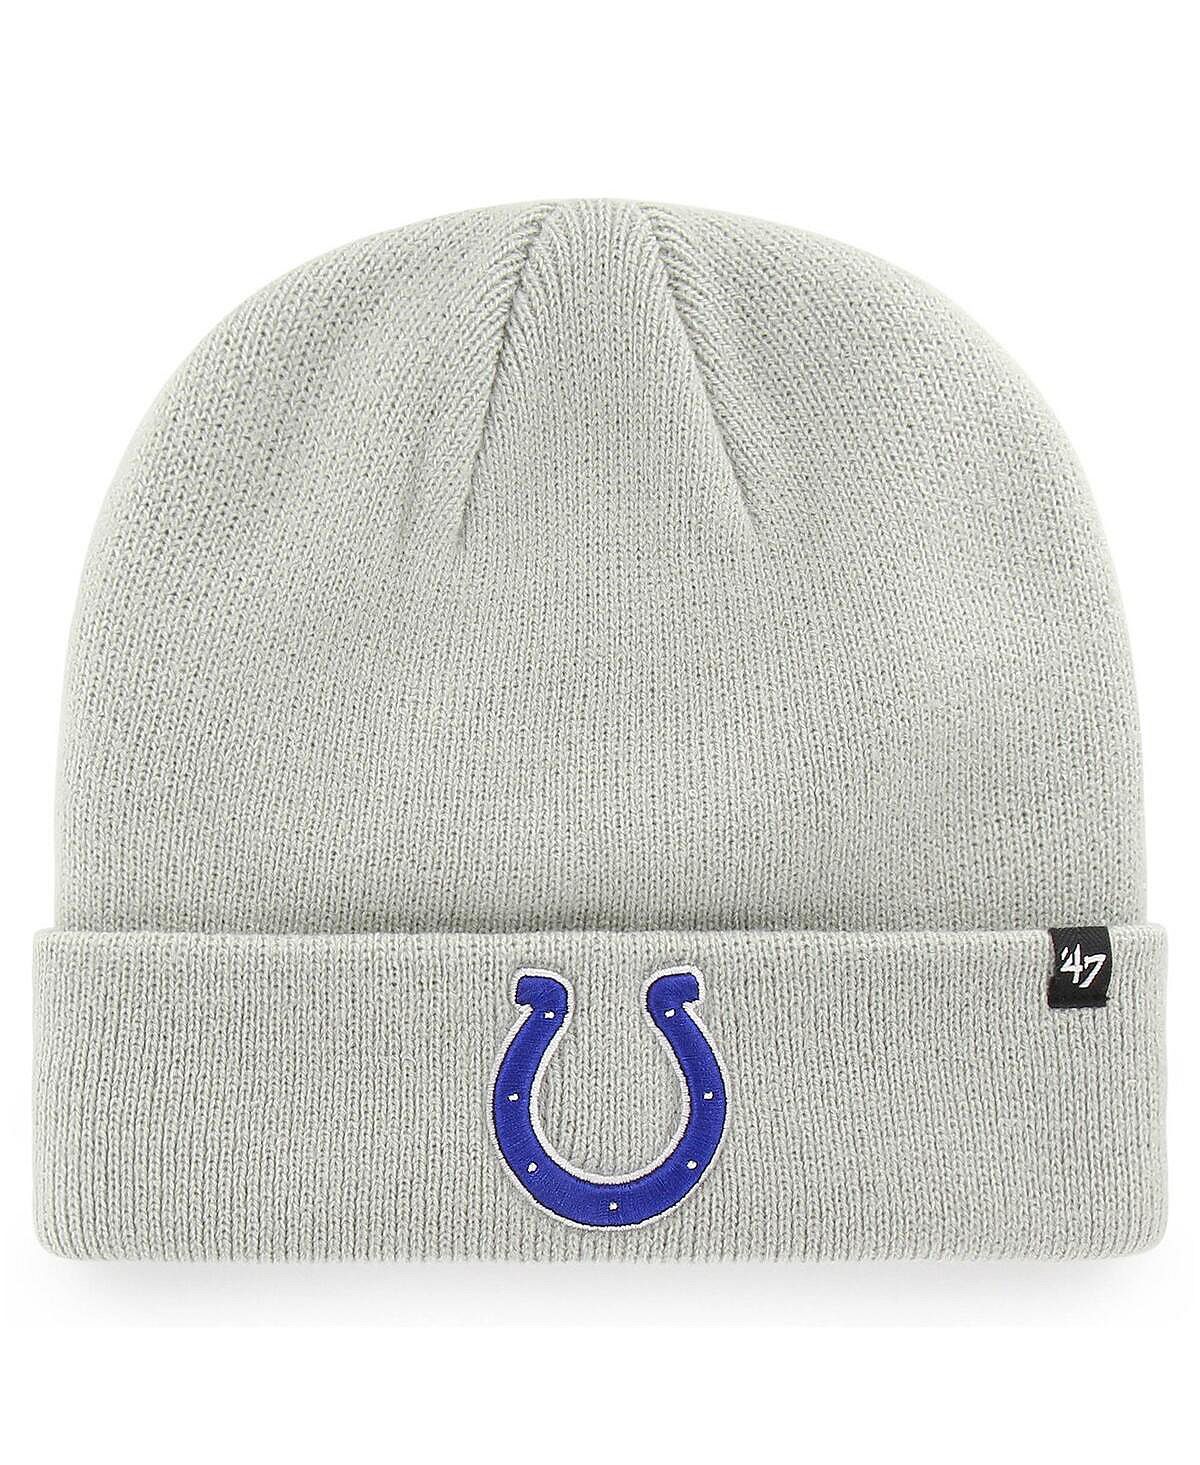 Мужская серая базовая вязаная шапка Indianapolis Colts '47 с манжетами среднего размера '47 Brand мужская базовая вязаная шапка с манжетами 47 baltimore ravens среднего размера фиолетового цвета 47 brand